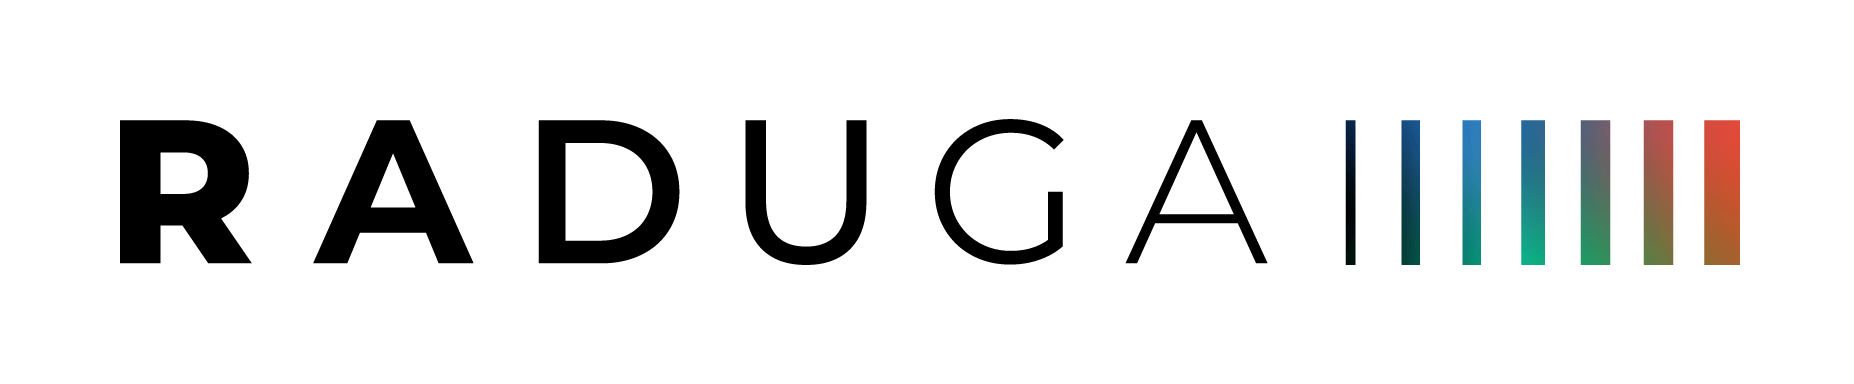 Raduga logo